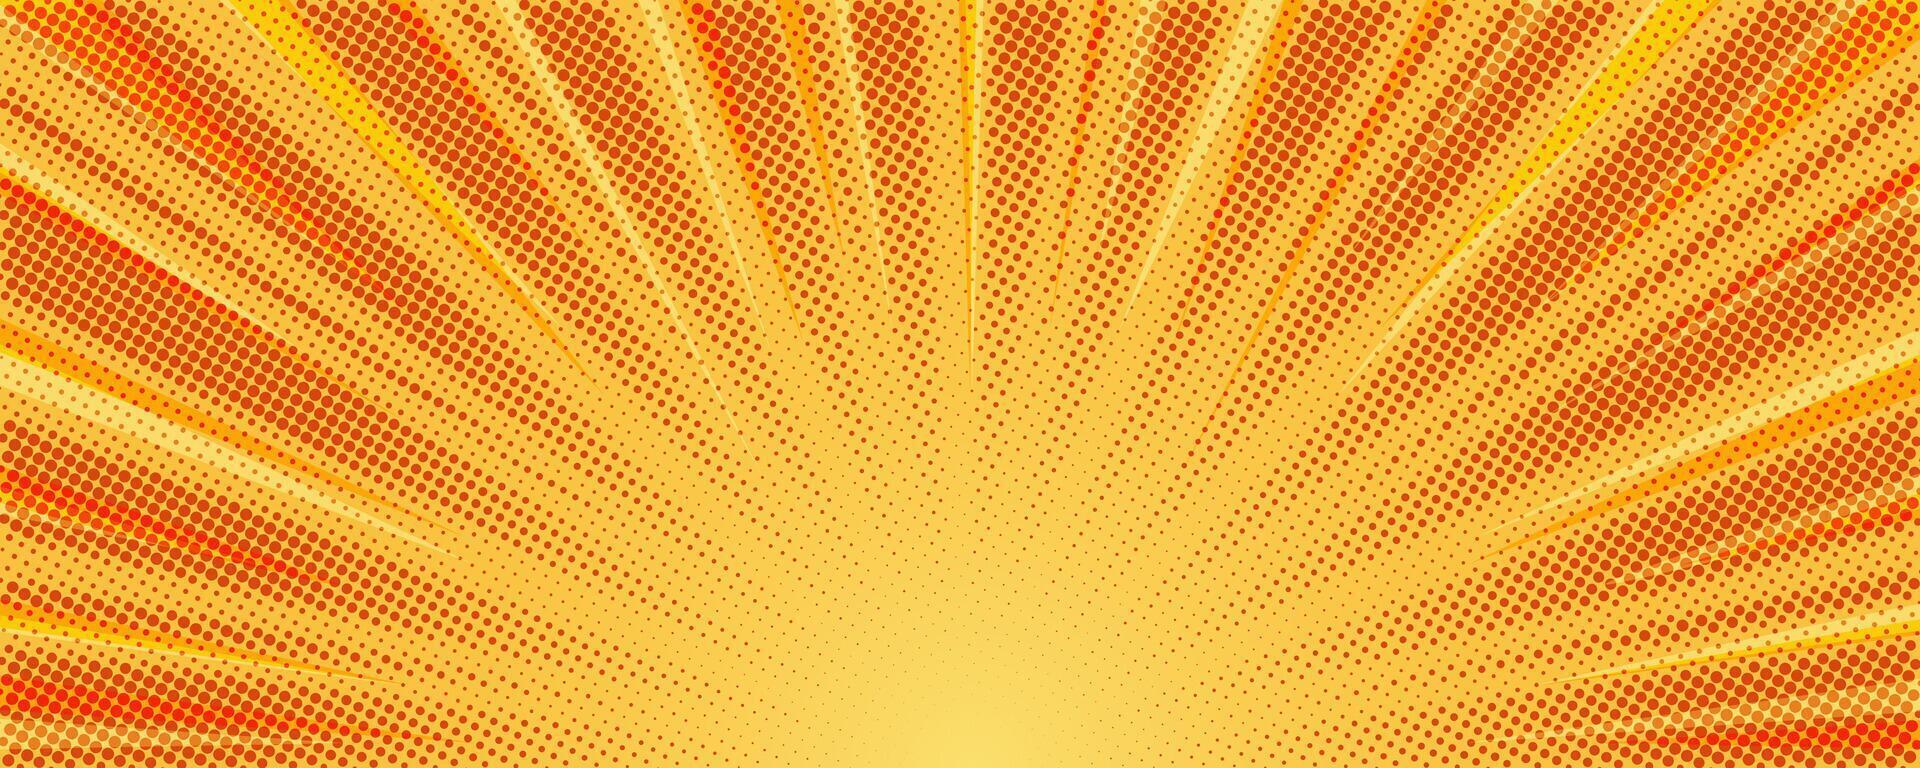 sunburst sfondo vettore illustrazione. giallo soleggiato raggi. retrò stella leggero con mezzitoni. comico astratto sfondo.